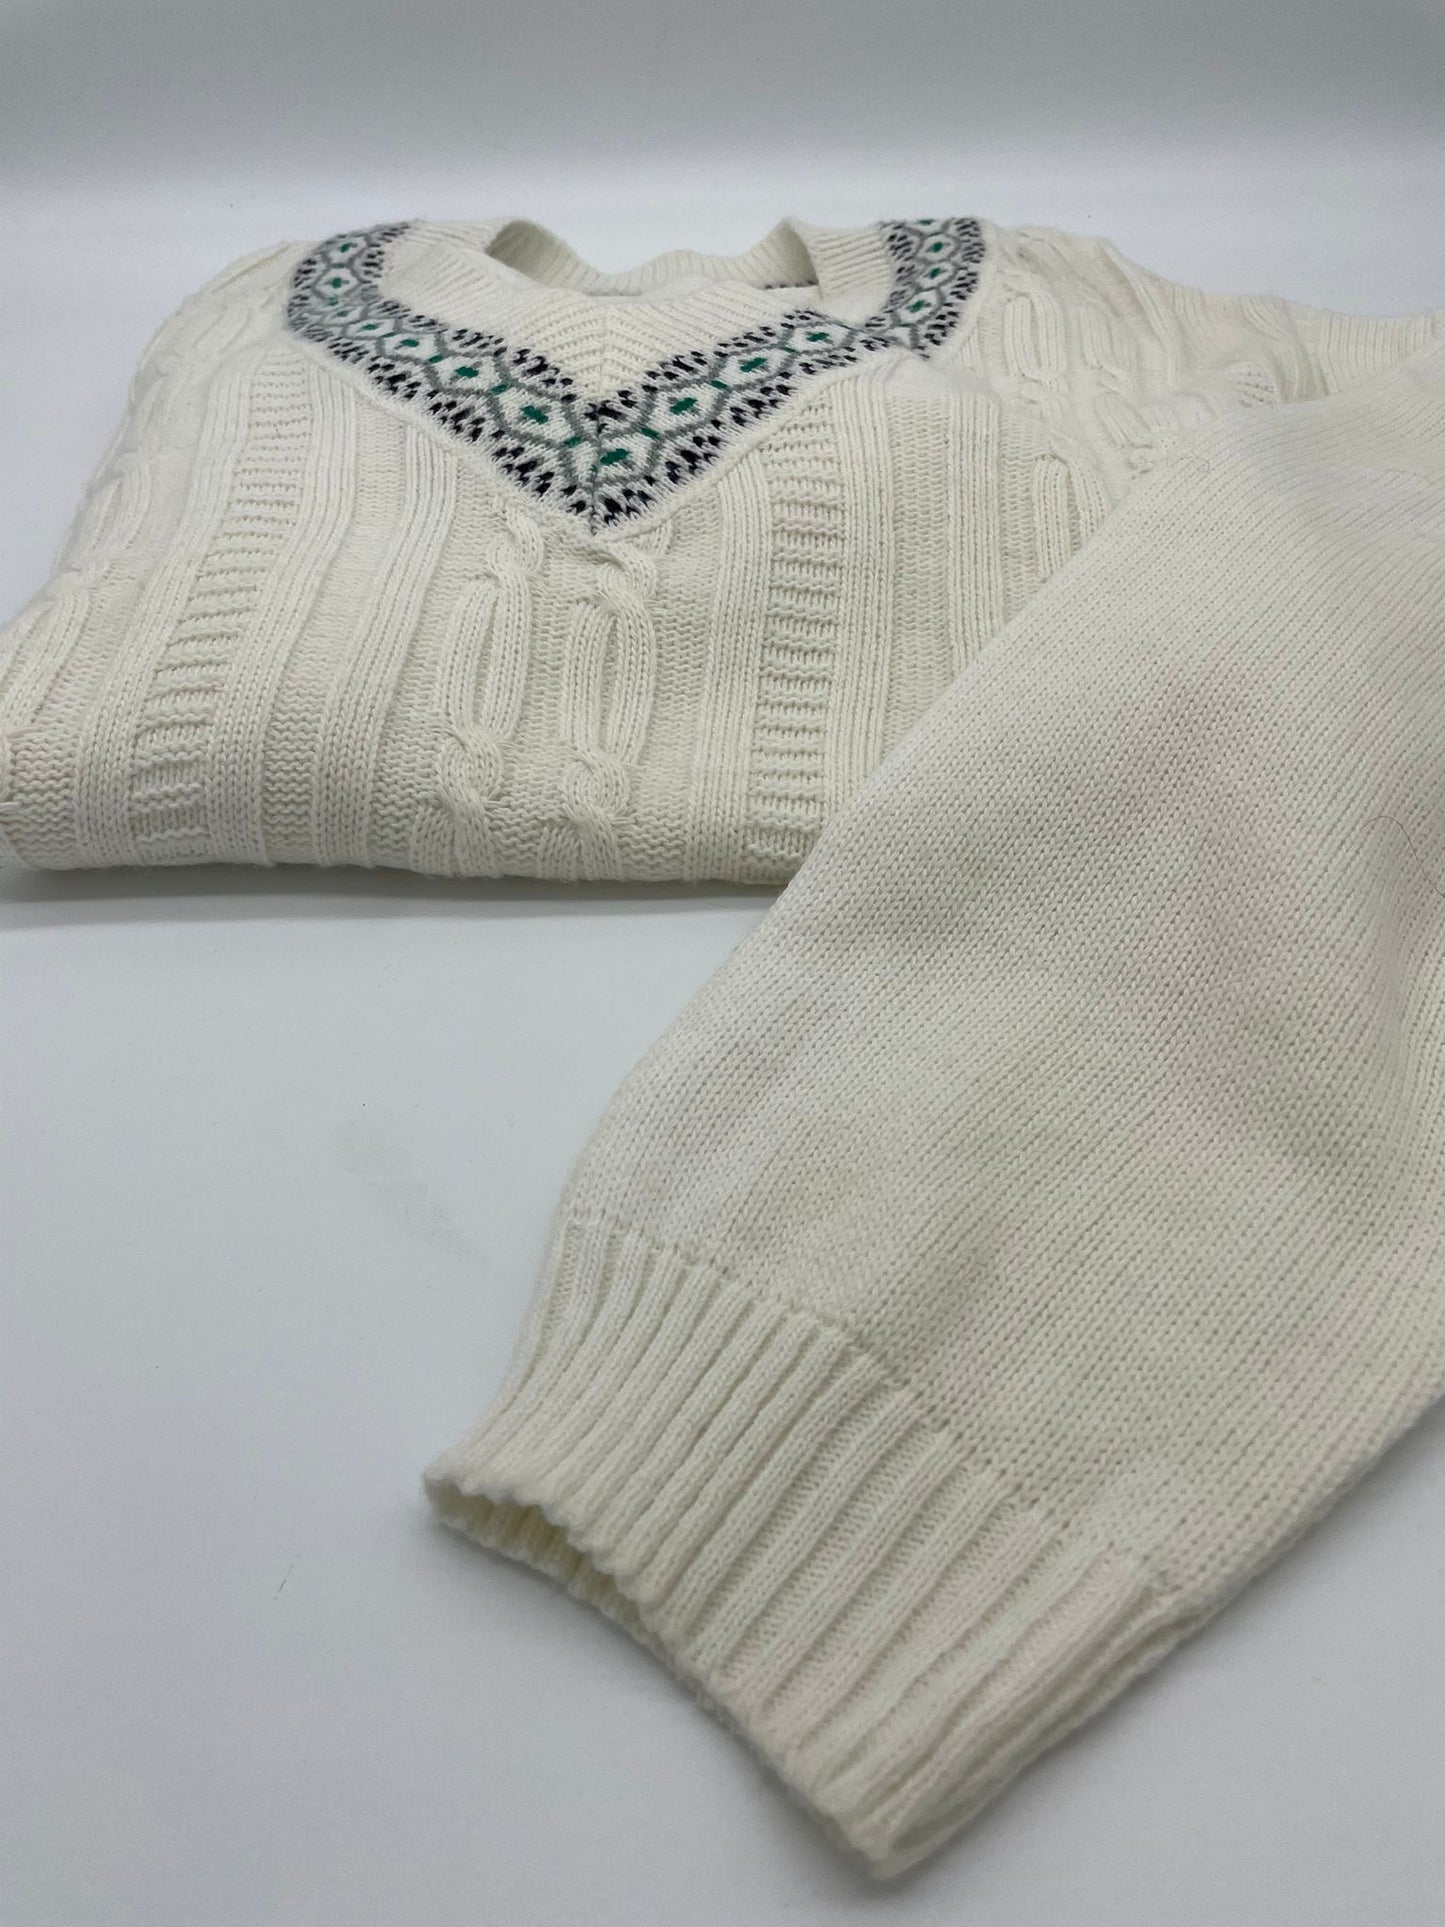 Vintage Sweater - Wool Blend